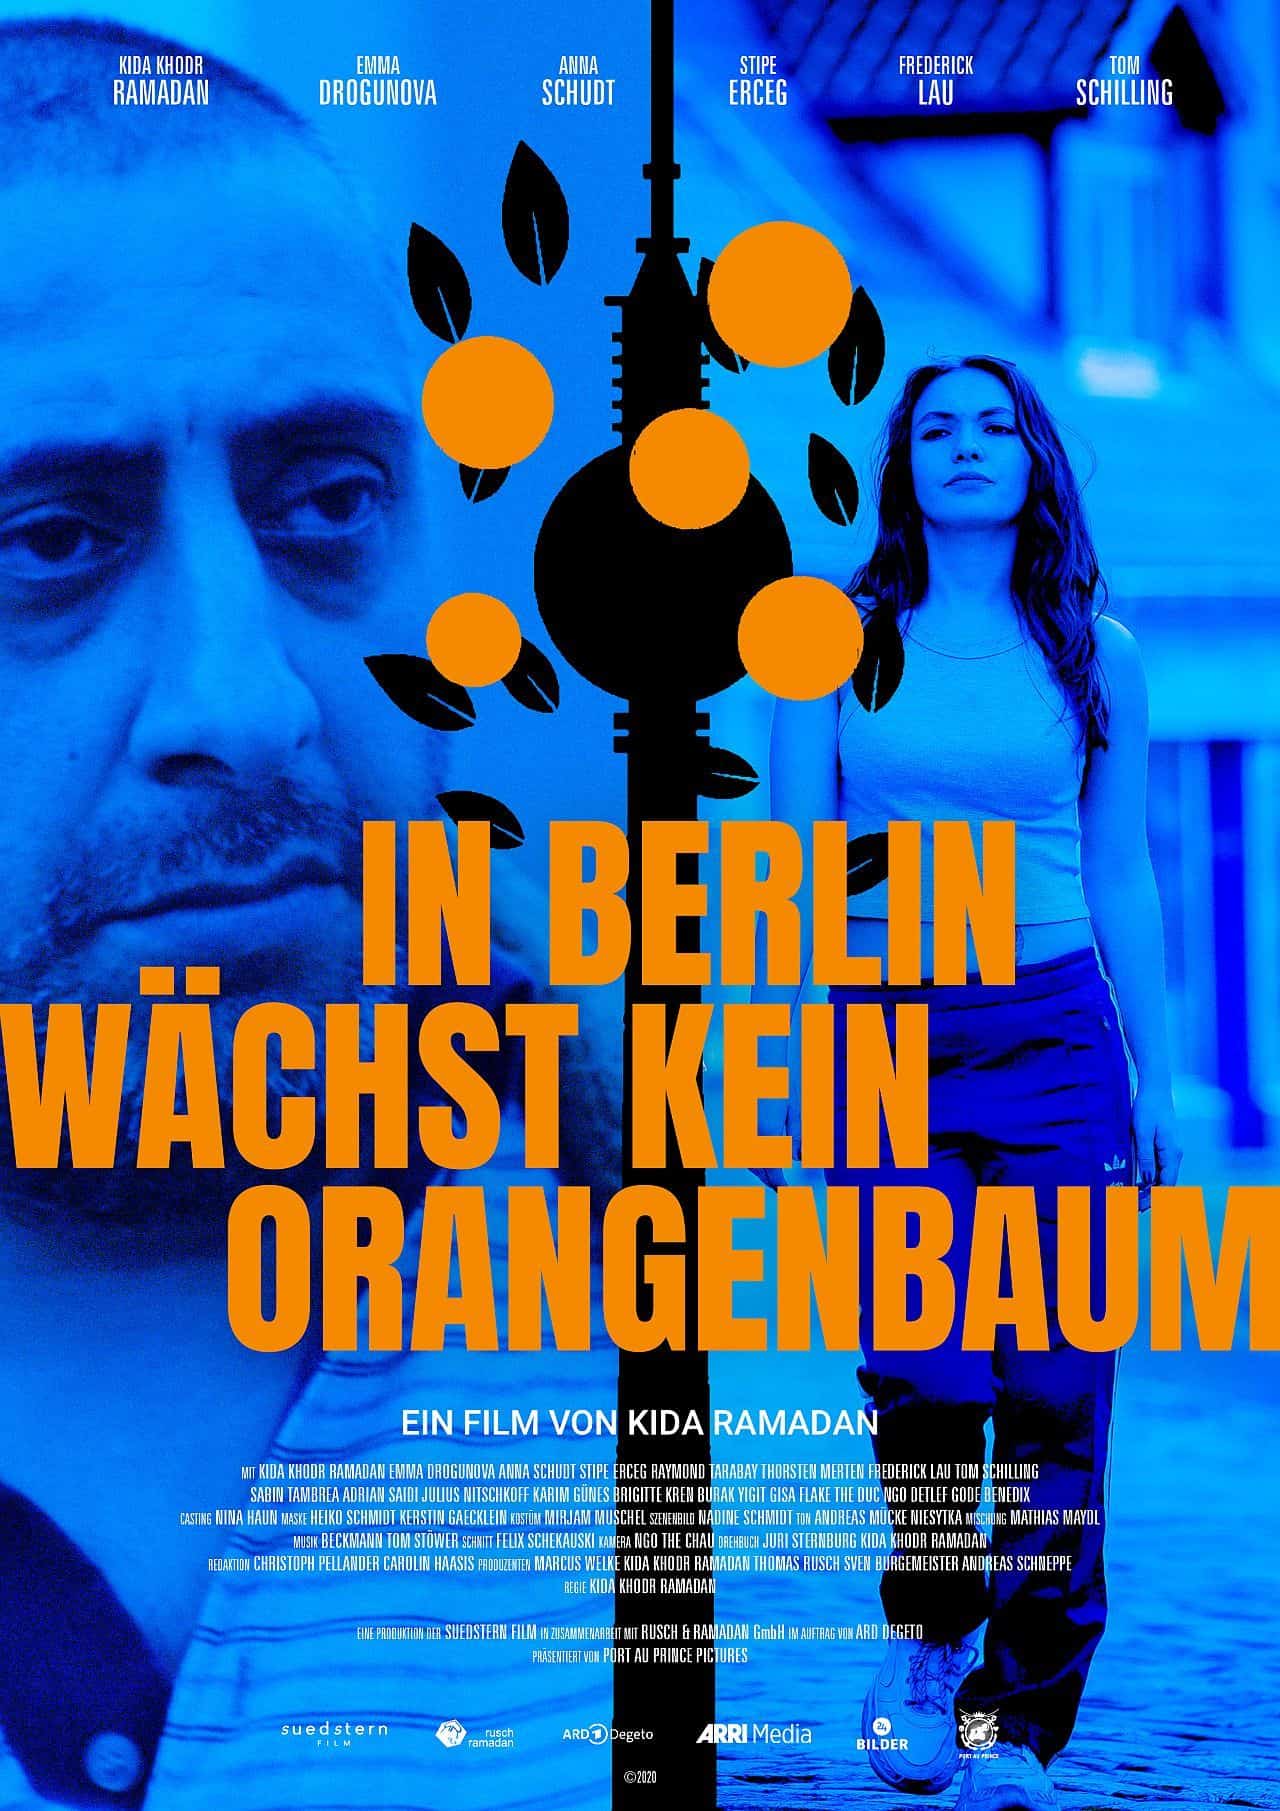 In Berlin Wächst Kein Orangenbaum | Trailer